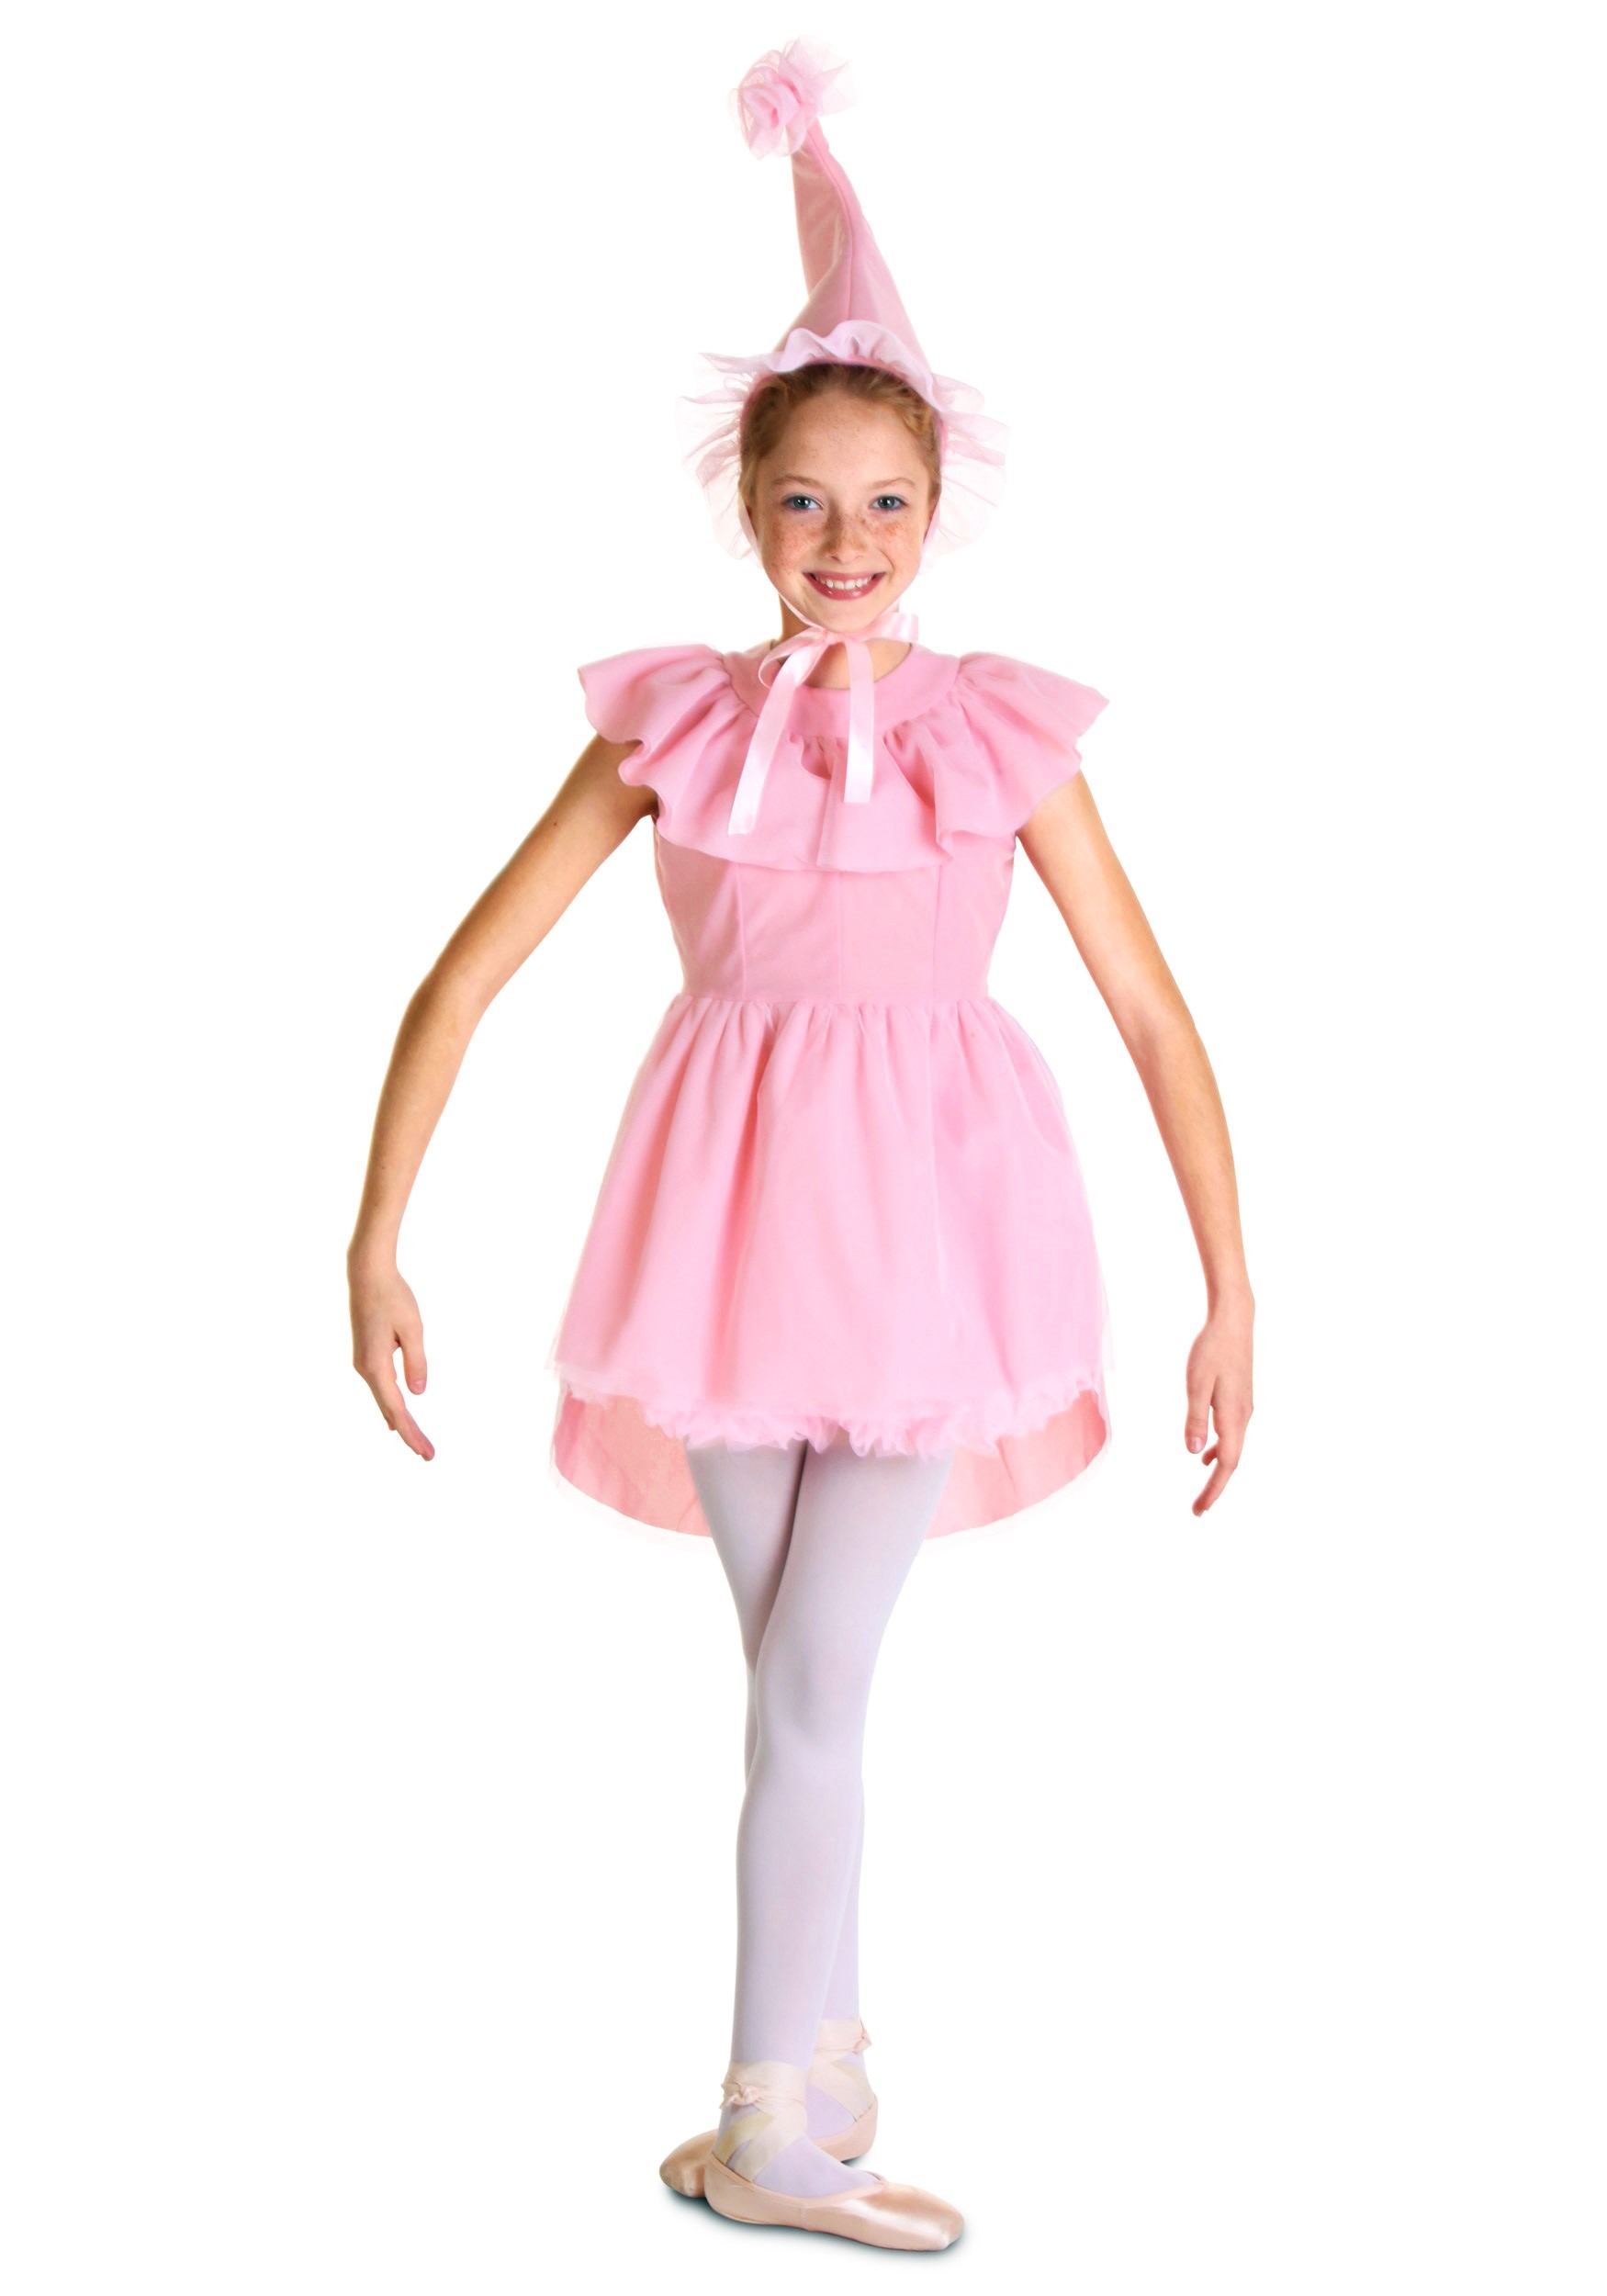  Dancina Dance Tights Big Girls Tweens Ballet Dance  Gymnastics Practice Costume L